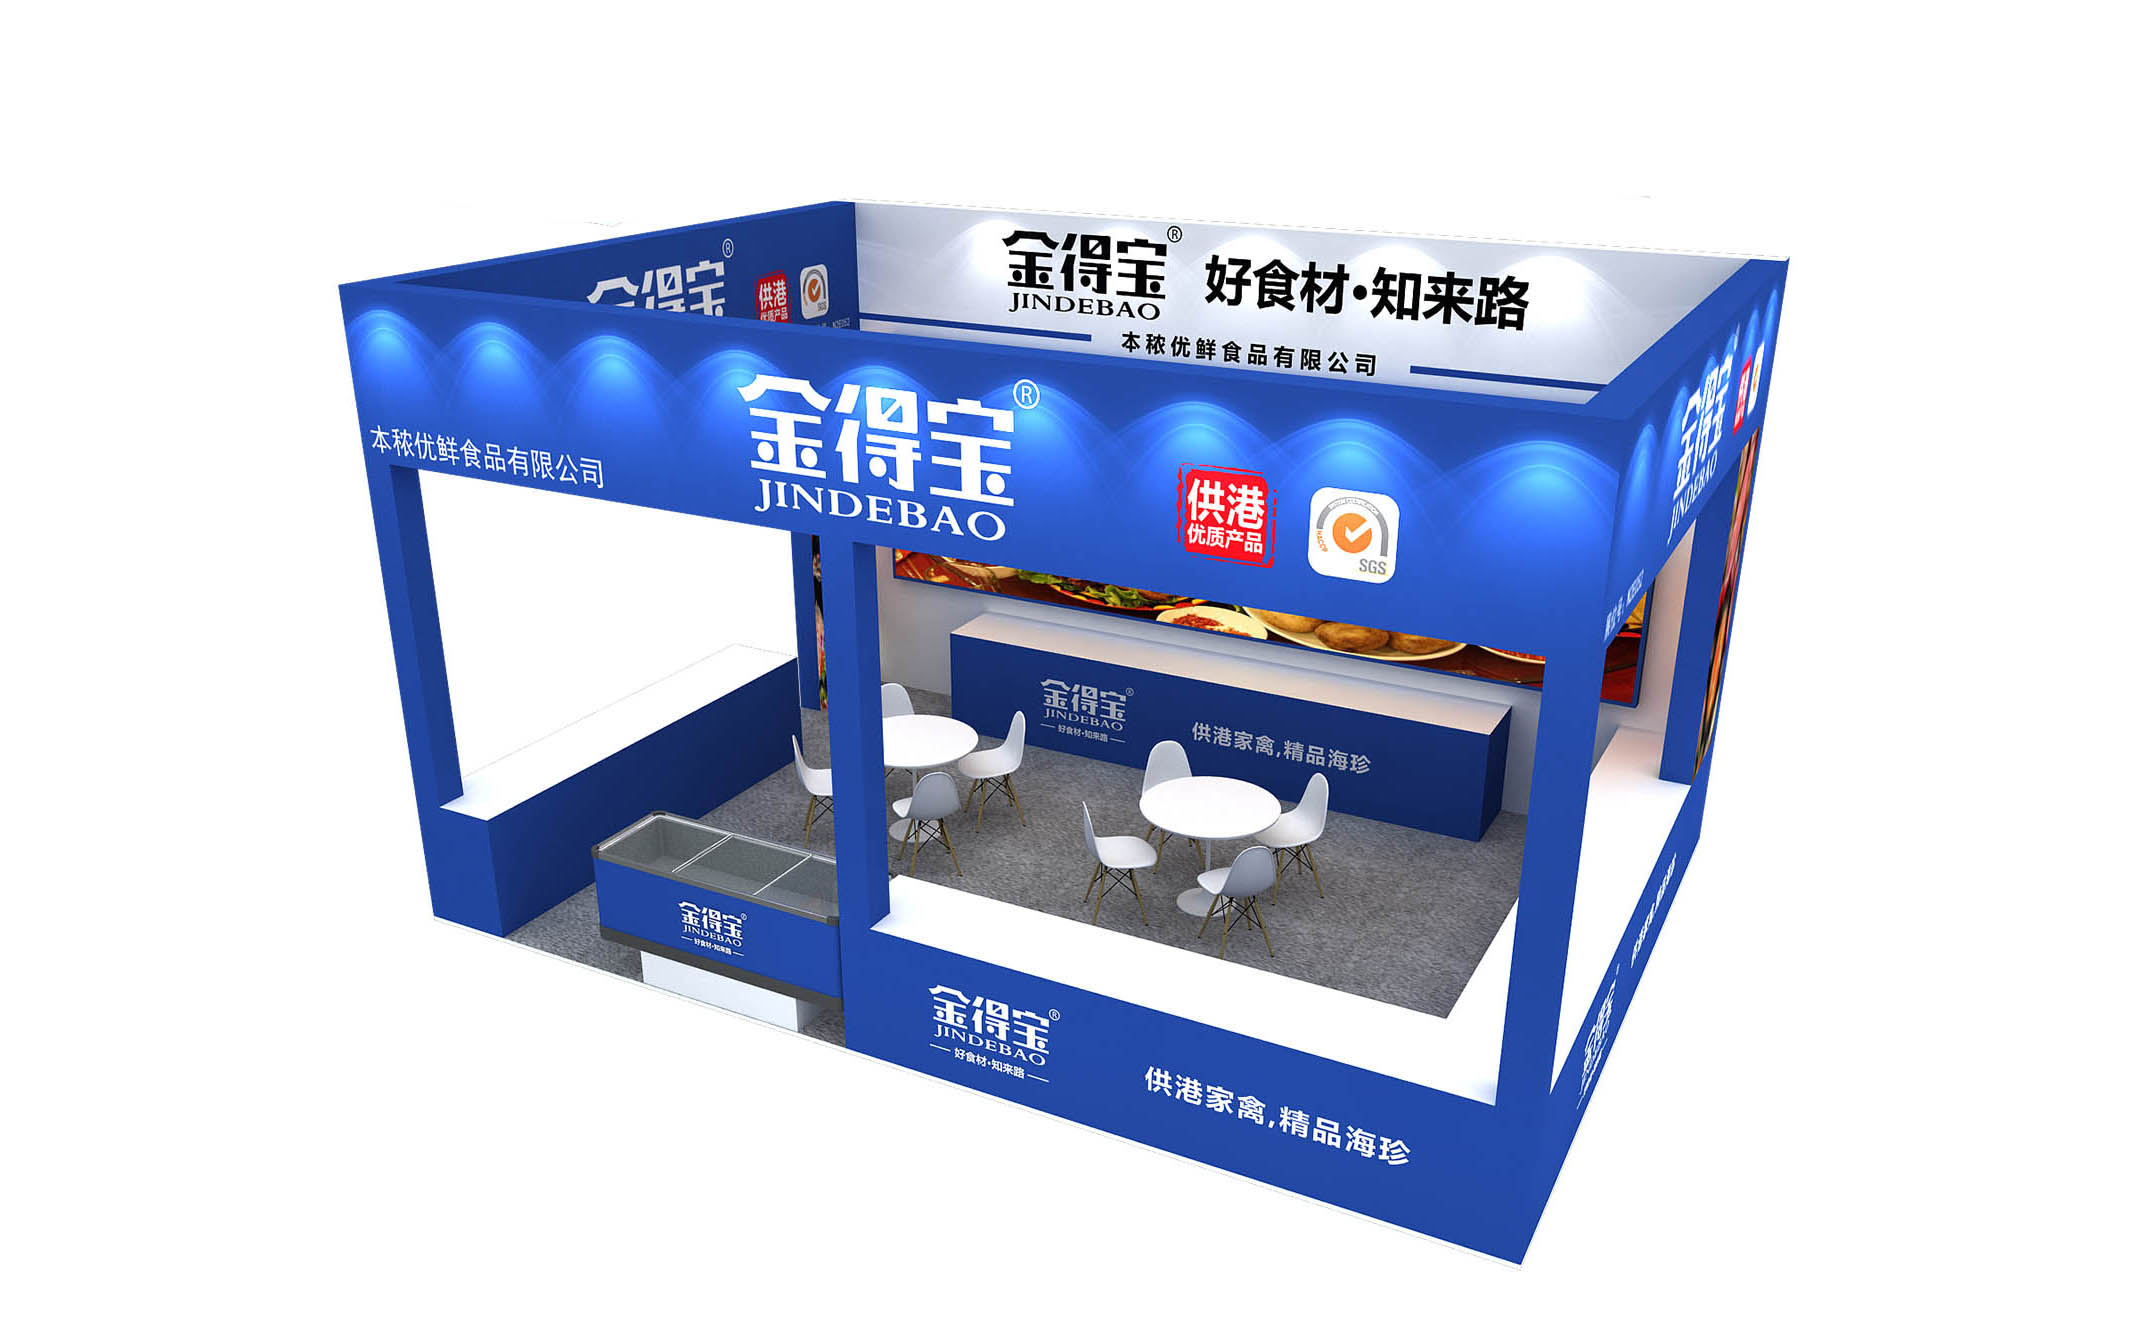 【特装欣赏合集一】 第14届歌华食材展将于8月23-25日亮相上海新国际博览中心(图52)